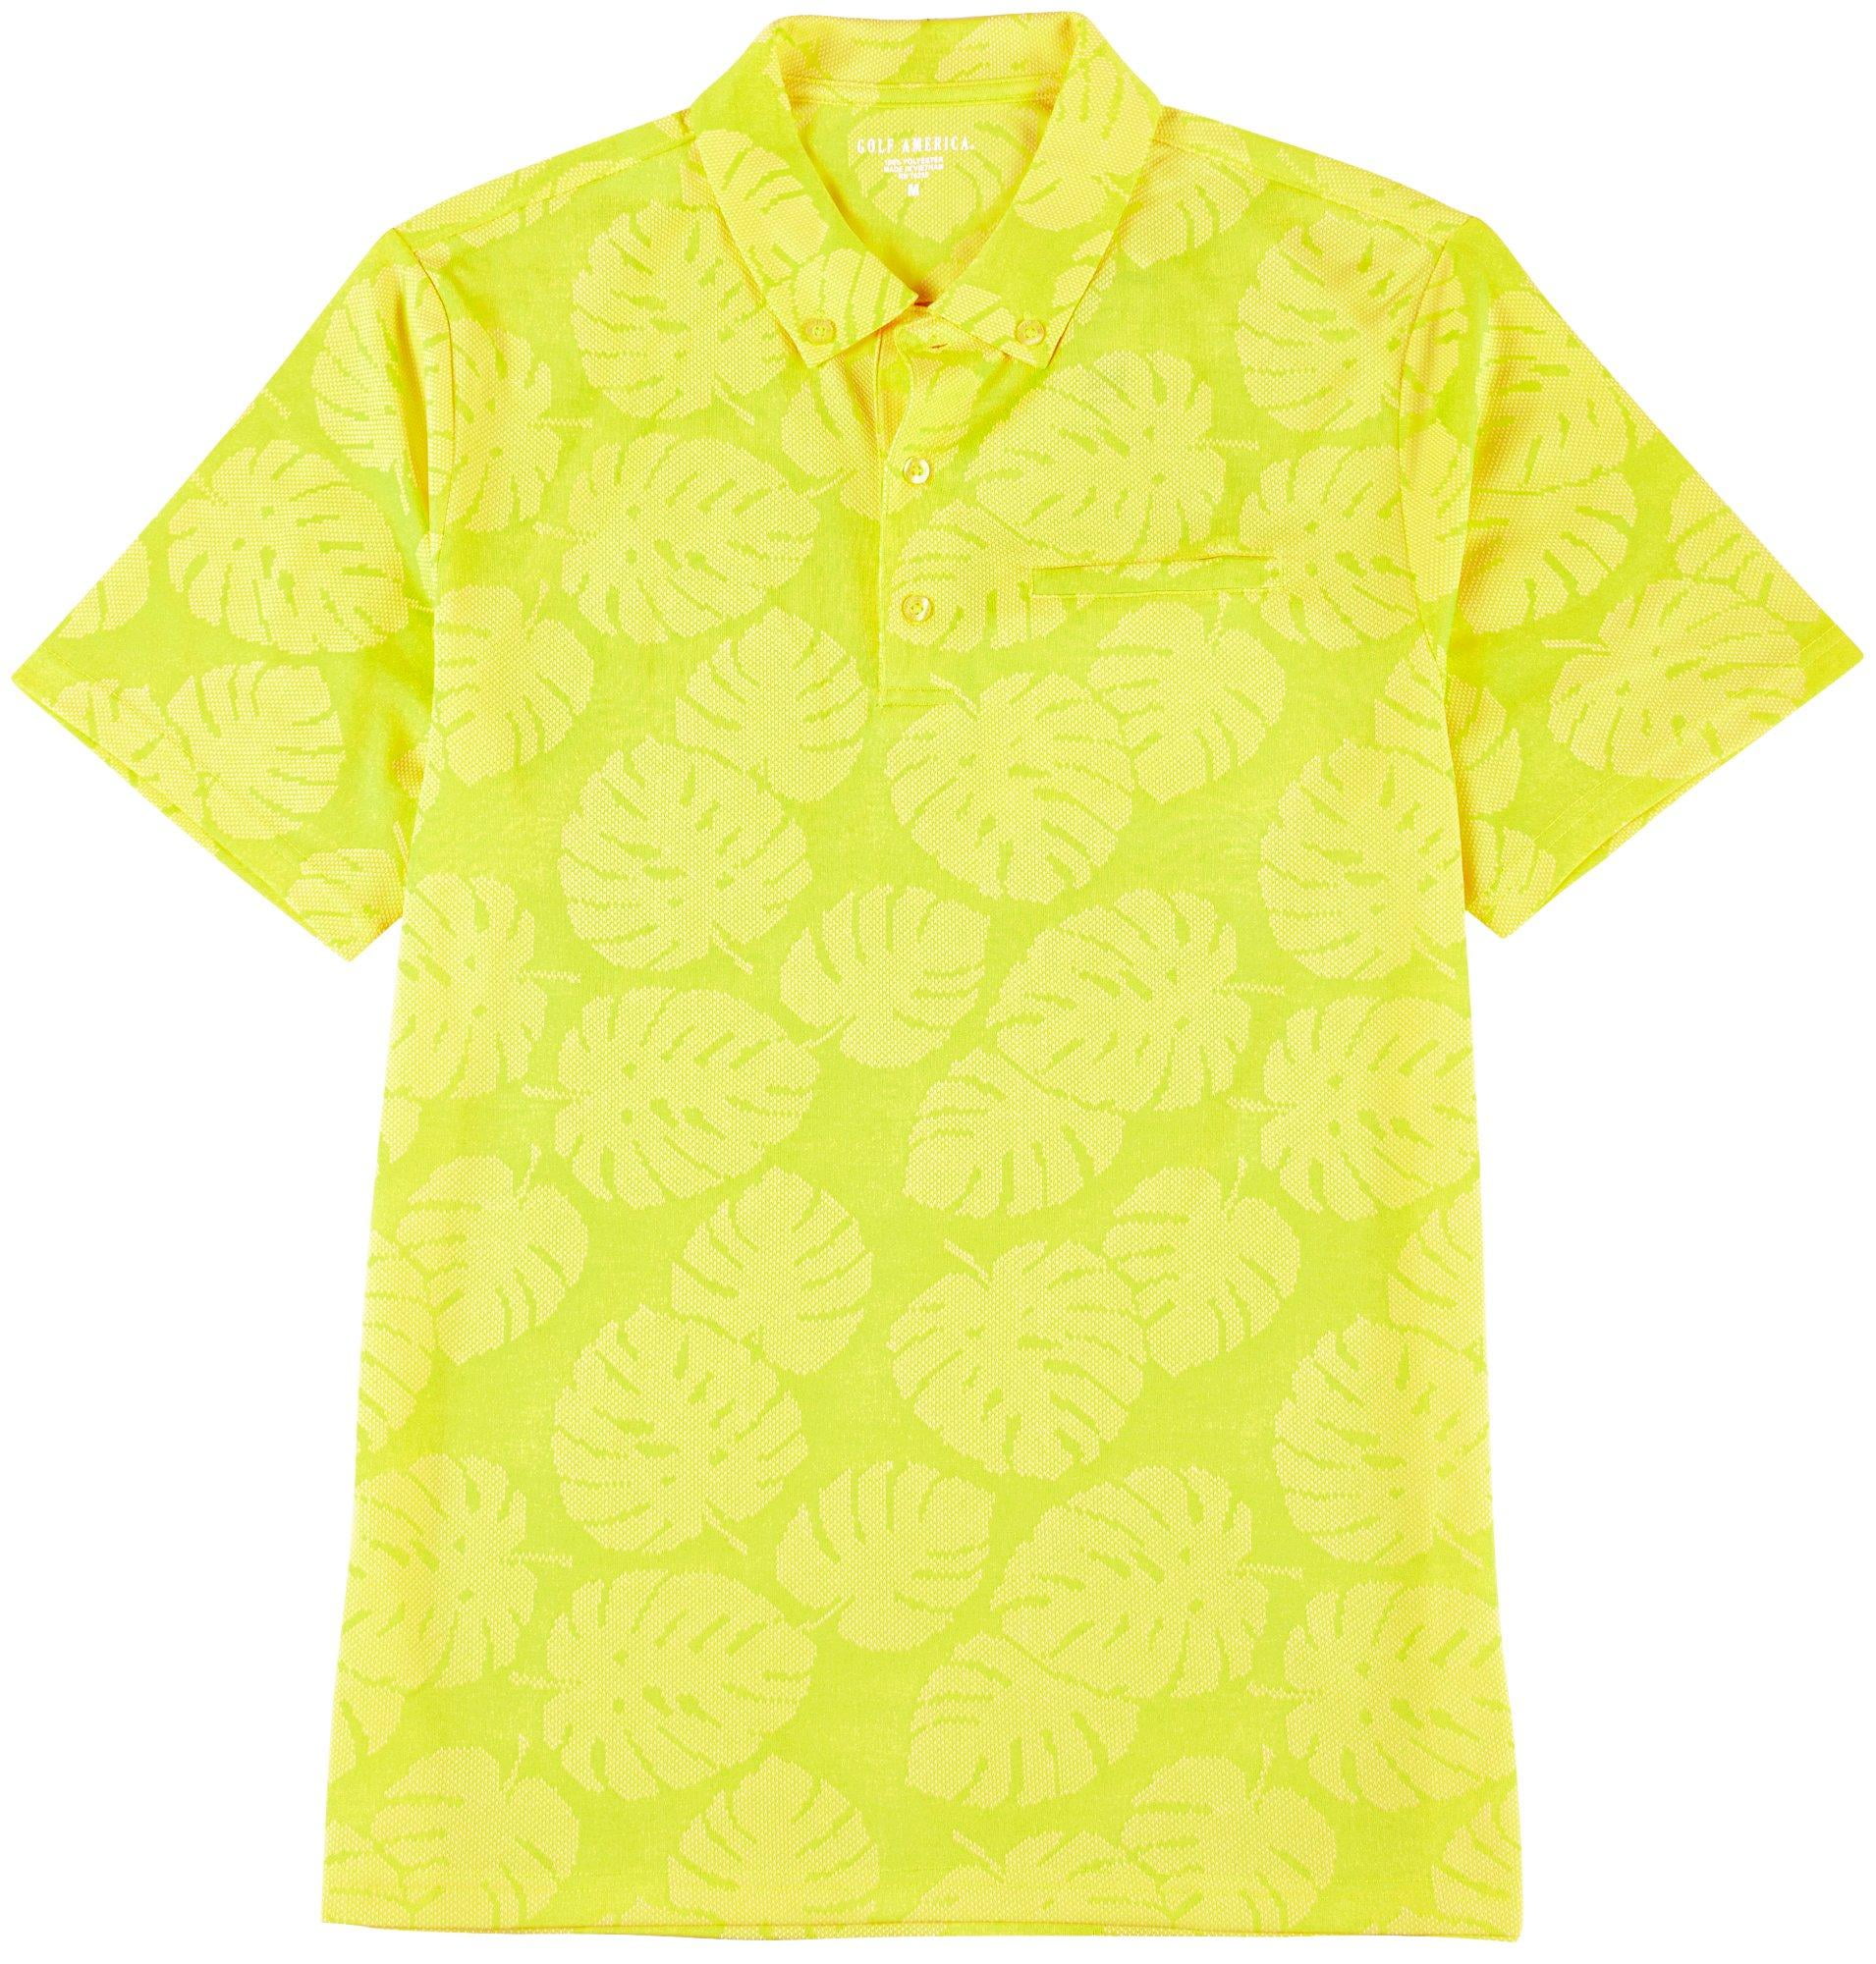 lime green golf shirt